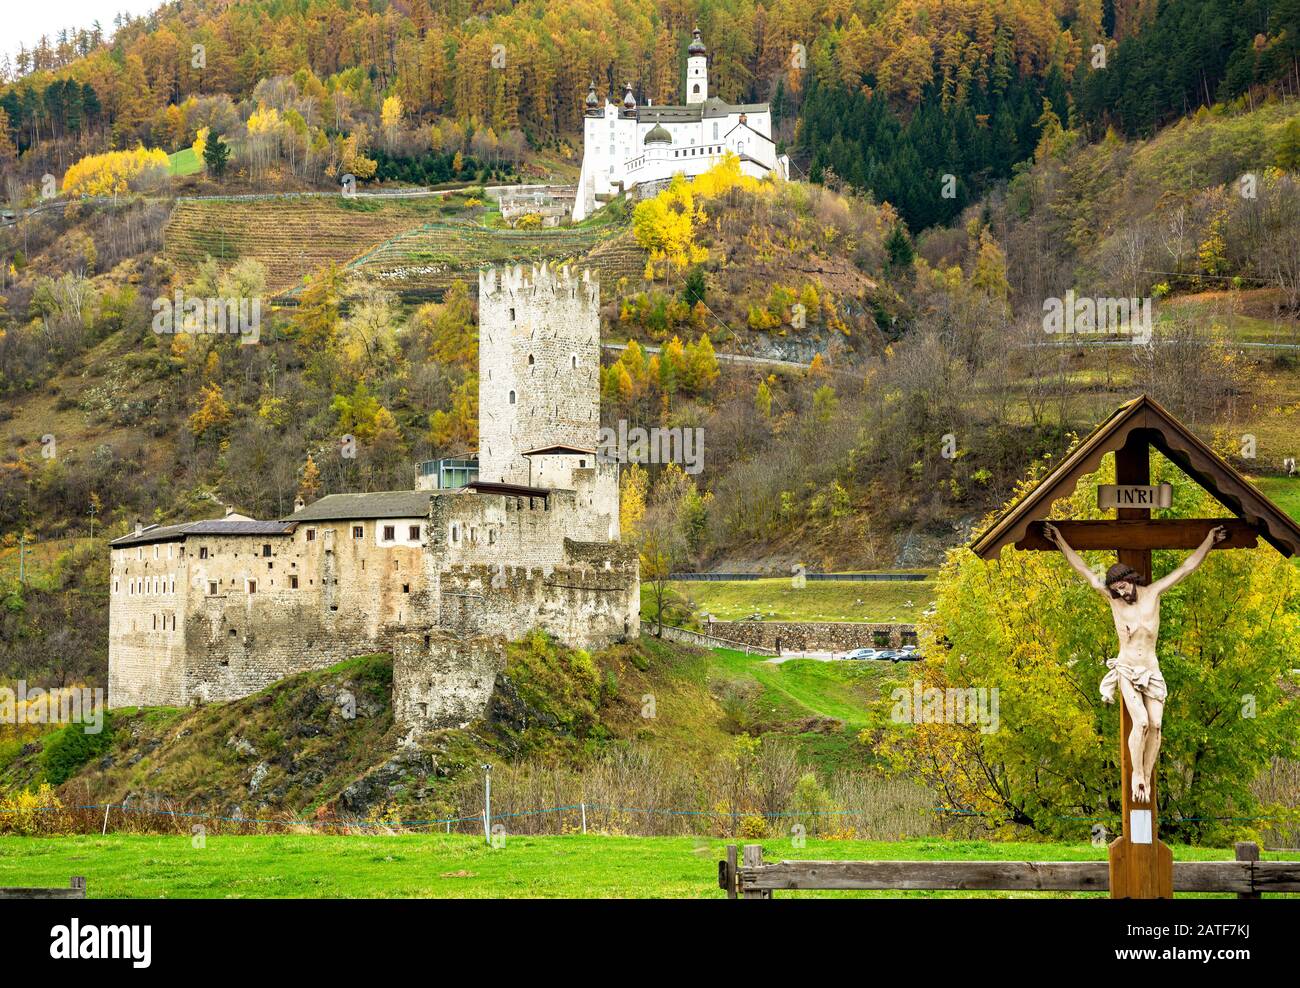 Burgutio, Südtirol, Norditalien. Das Kloster Marienberg und seine Burg dominieren die Landschaft des Val Venosta. Ansicht von außen. Stockfoto